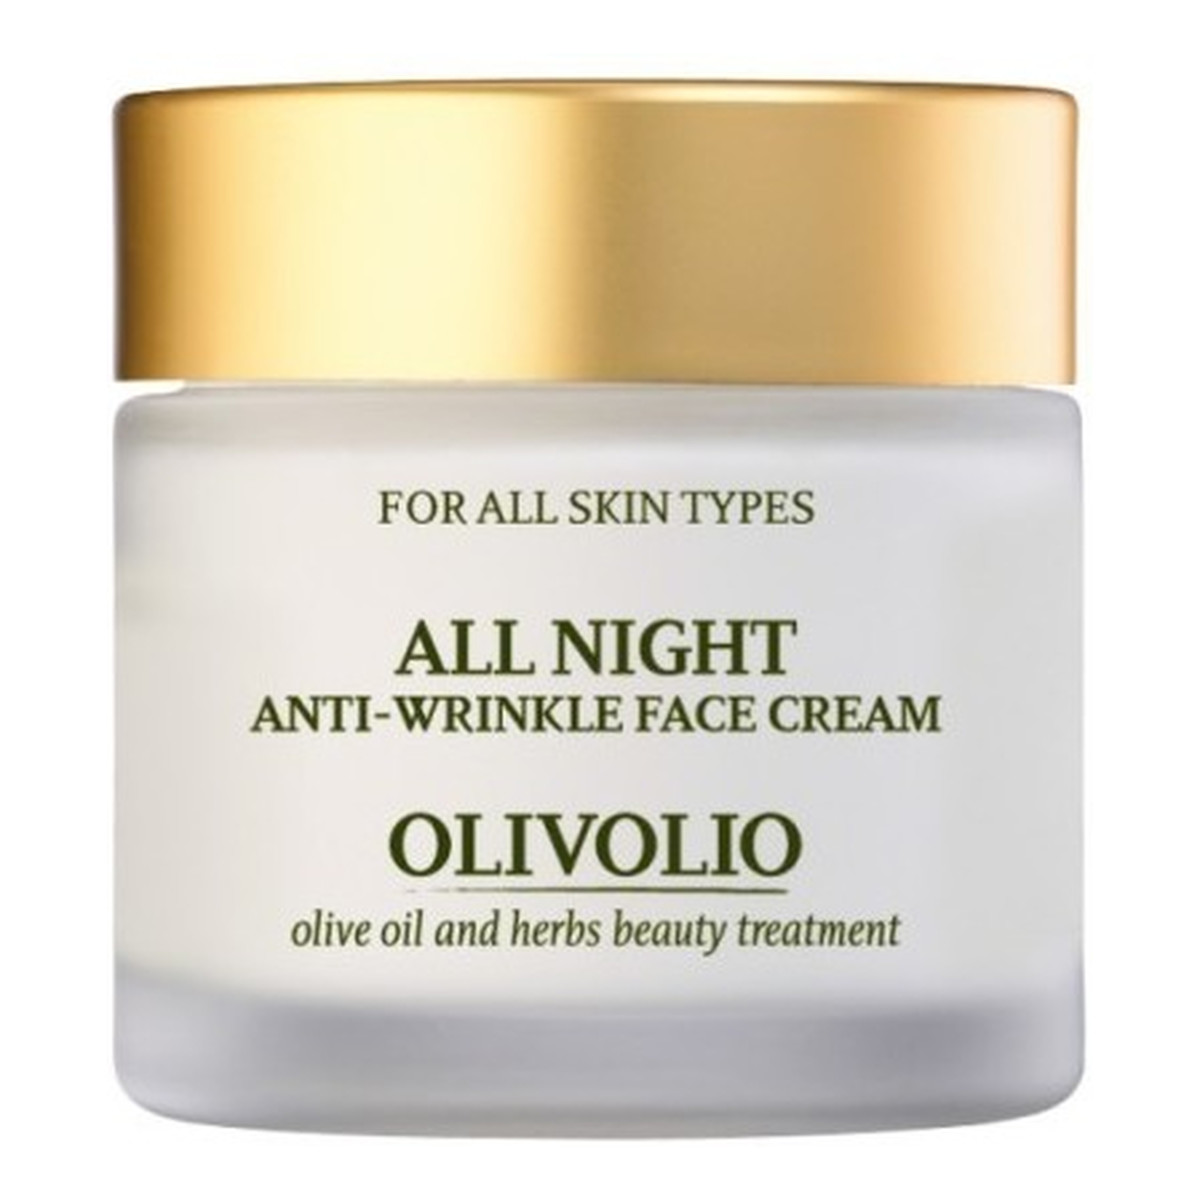 Olivolio All Night Anti-Wrinkle Face Cream Przeciwzmarszczkowy krem do twarzy na noc z organiczną oliwą z oliwek 50ml